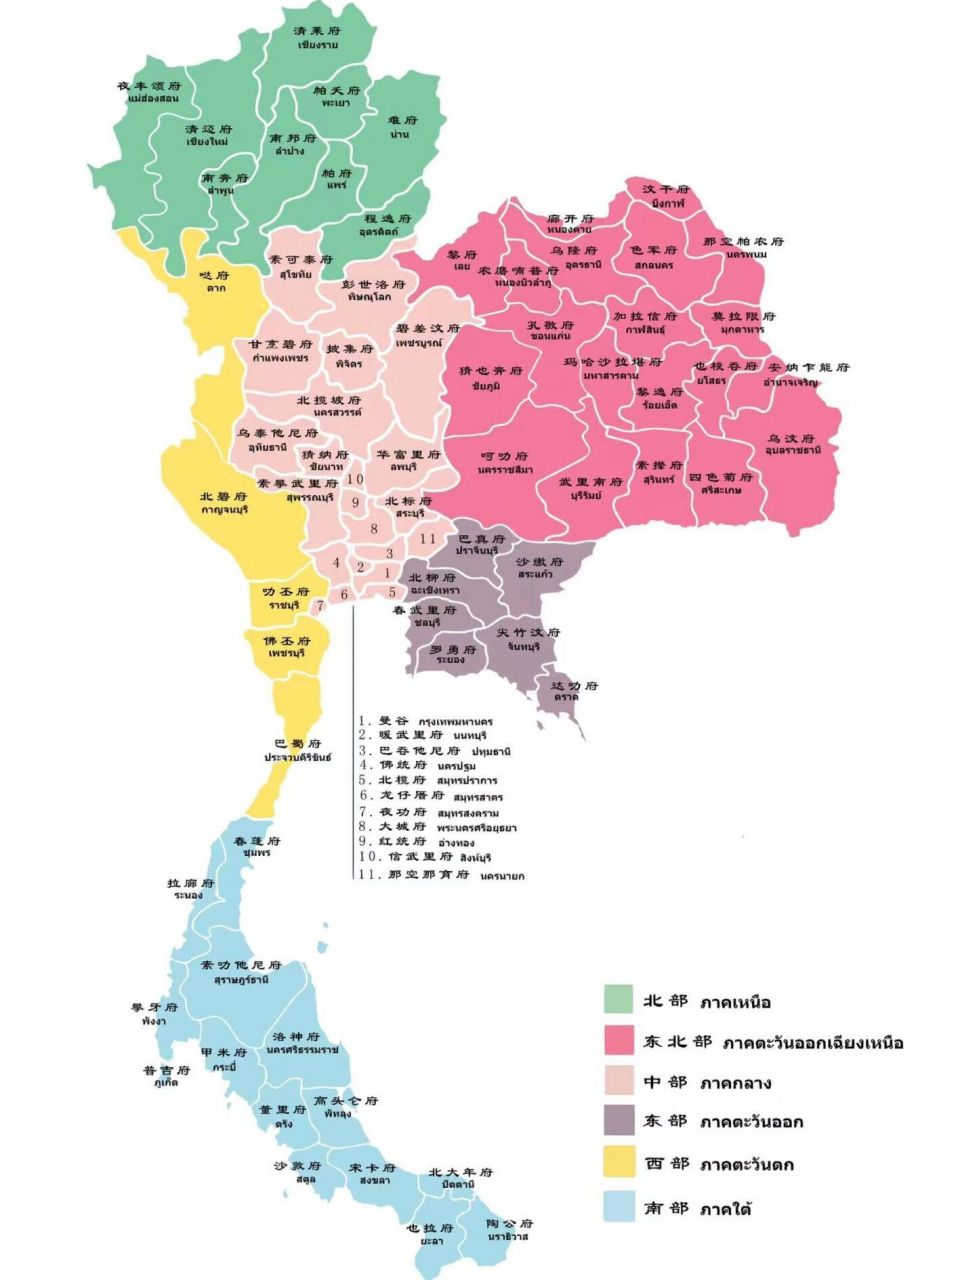 泰国地图附上每个府的泰语